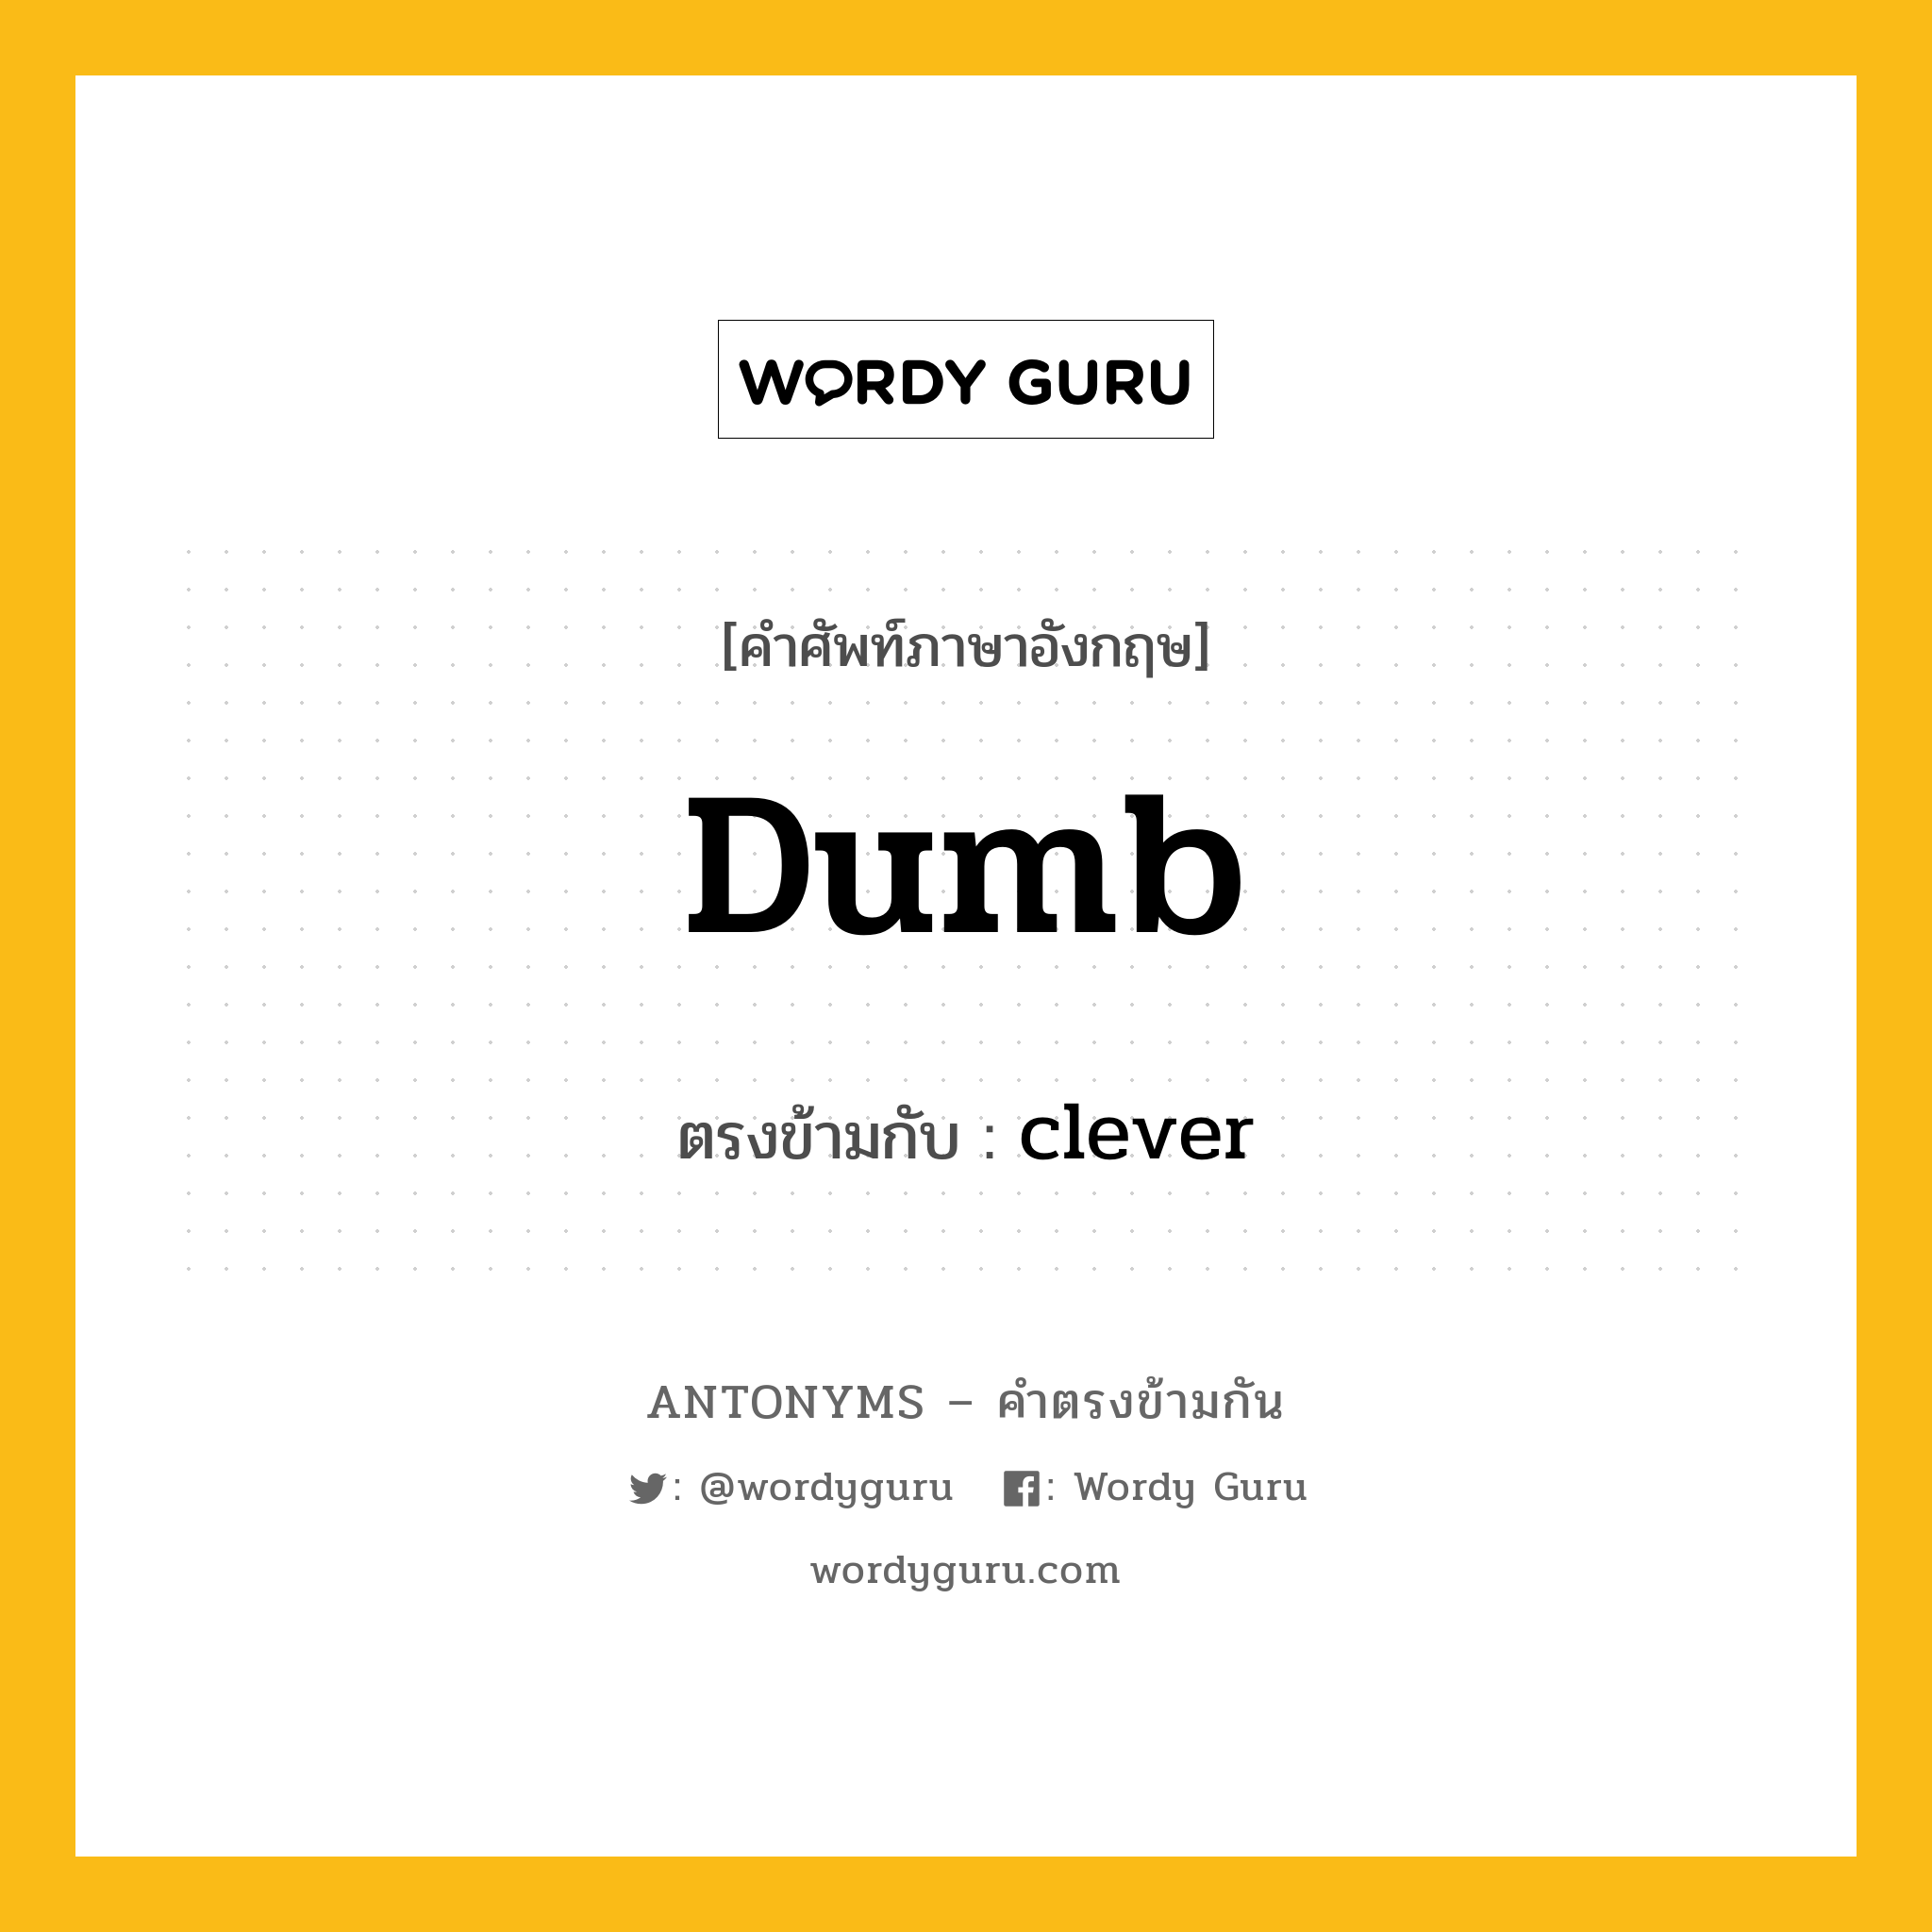 dumb เป็นคำตรงข้ามกับคำไหนบ้าง?, คำศัพท์ภาษาอังกฤษ dumb ตรงข้ามกับ clever หมวด clever